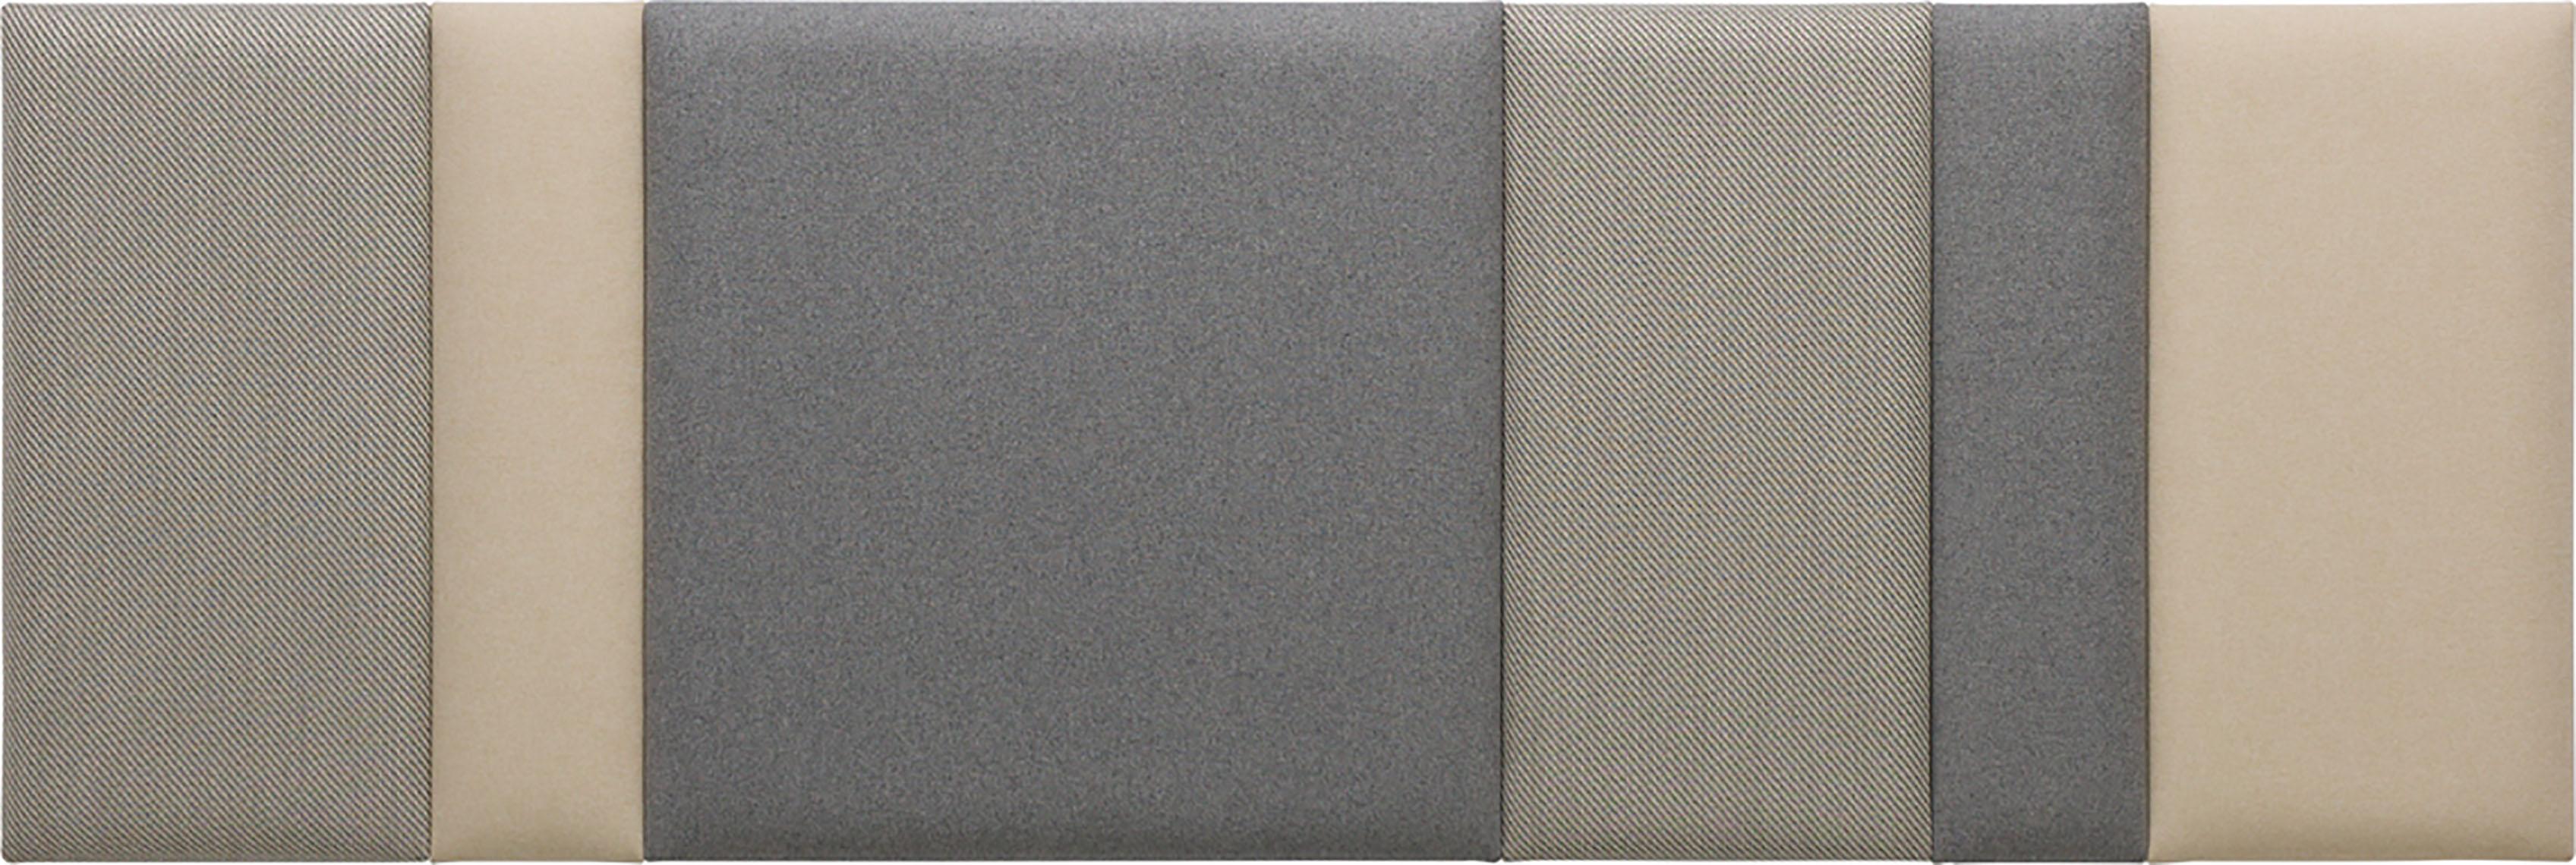 Conjunto de paneles regulares tapizados Soform grandes en gris y beige